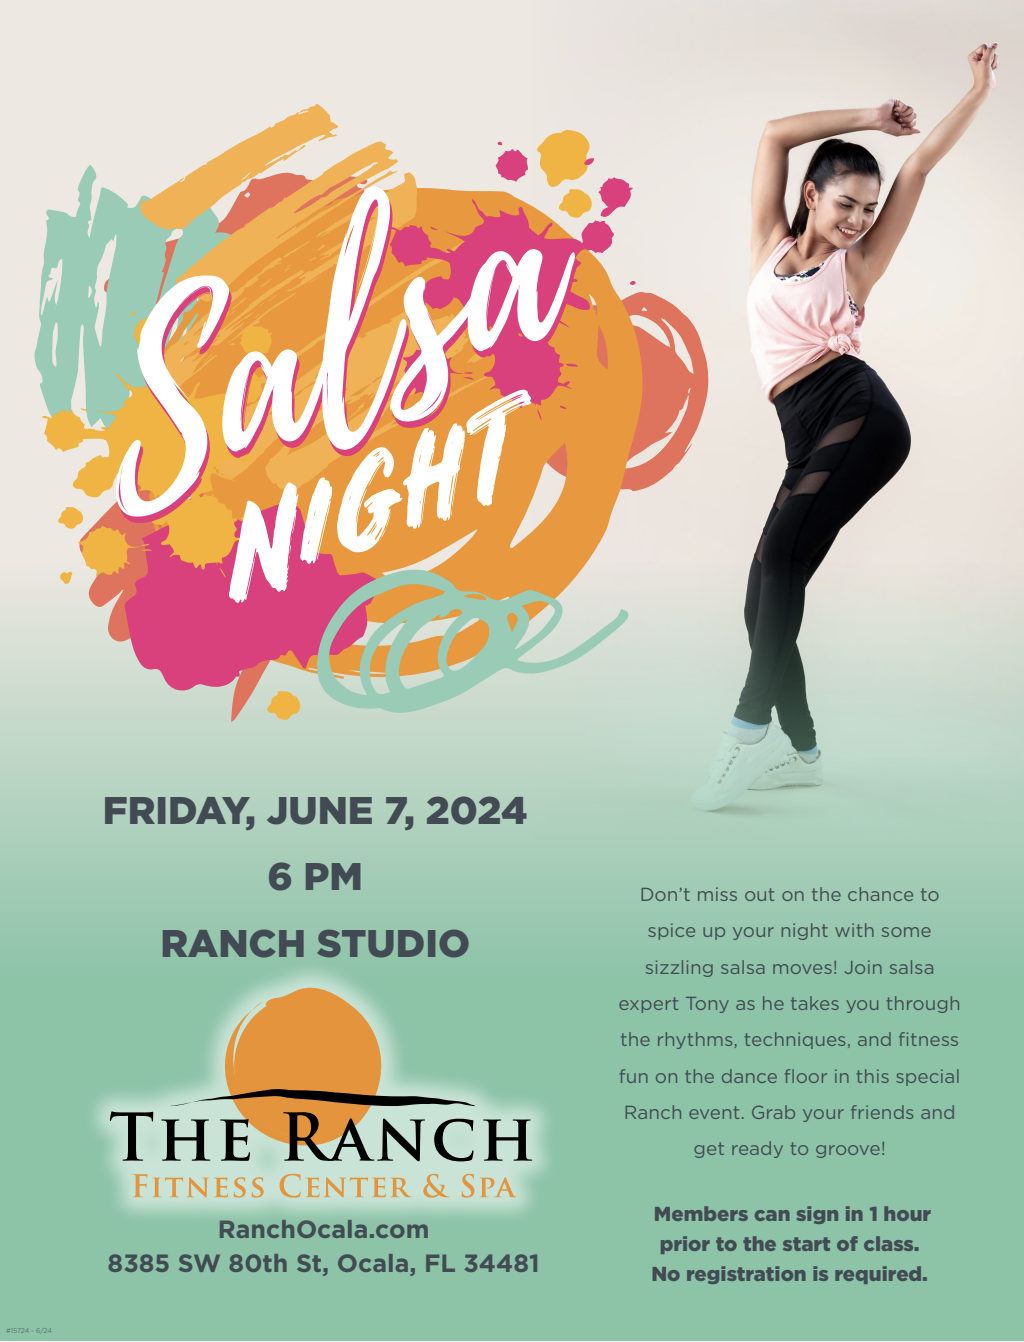 Salsa Night at The Ranch!